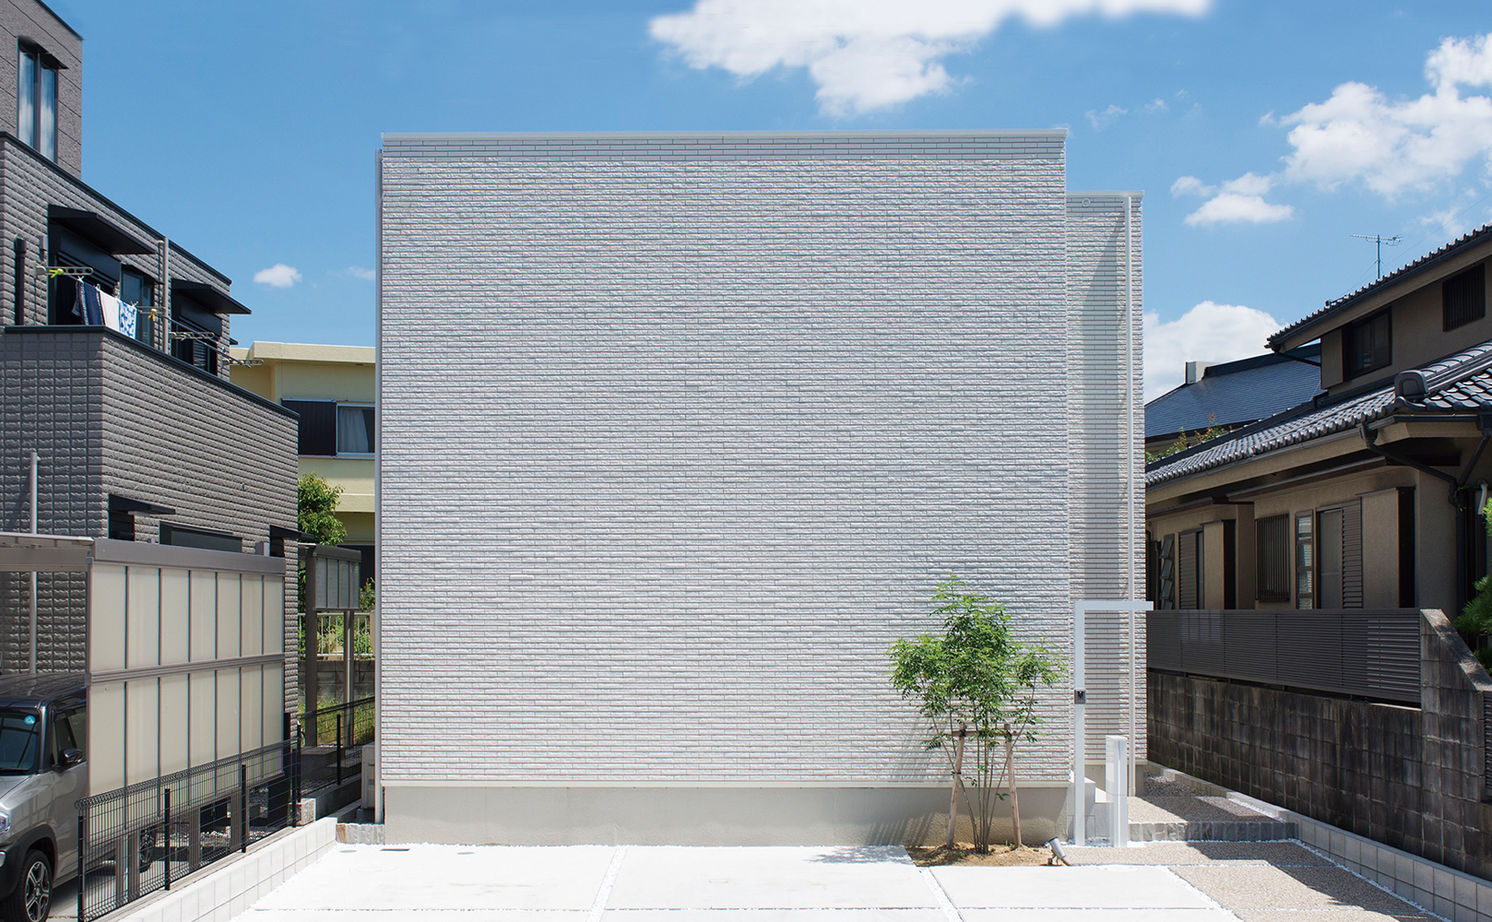 Suumo 憧れだった 大空間で暮らす家 トヨタホーム の建築実例詳細 注文住宅